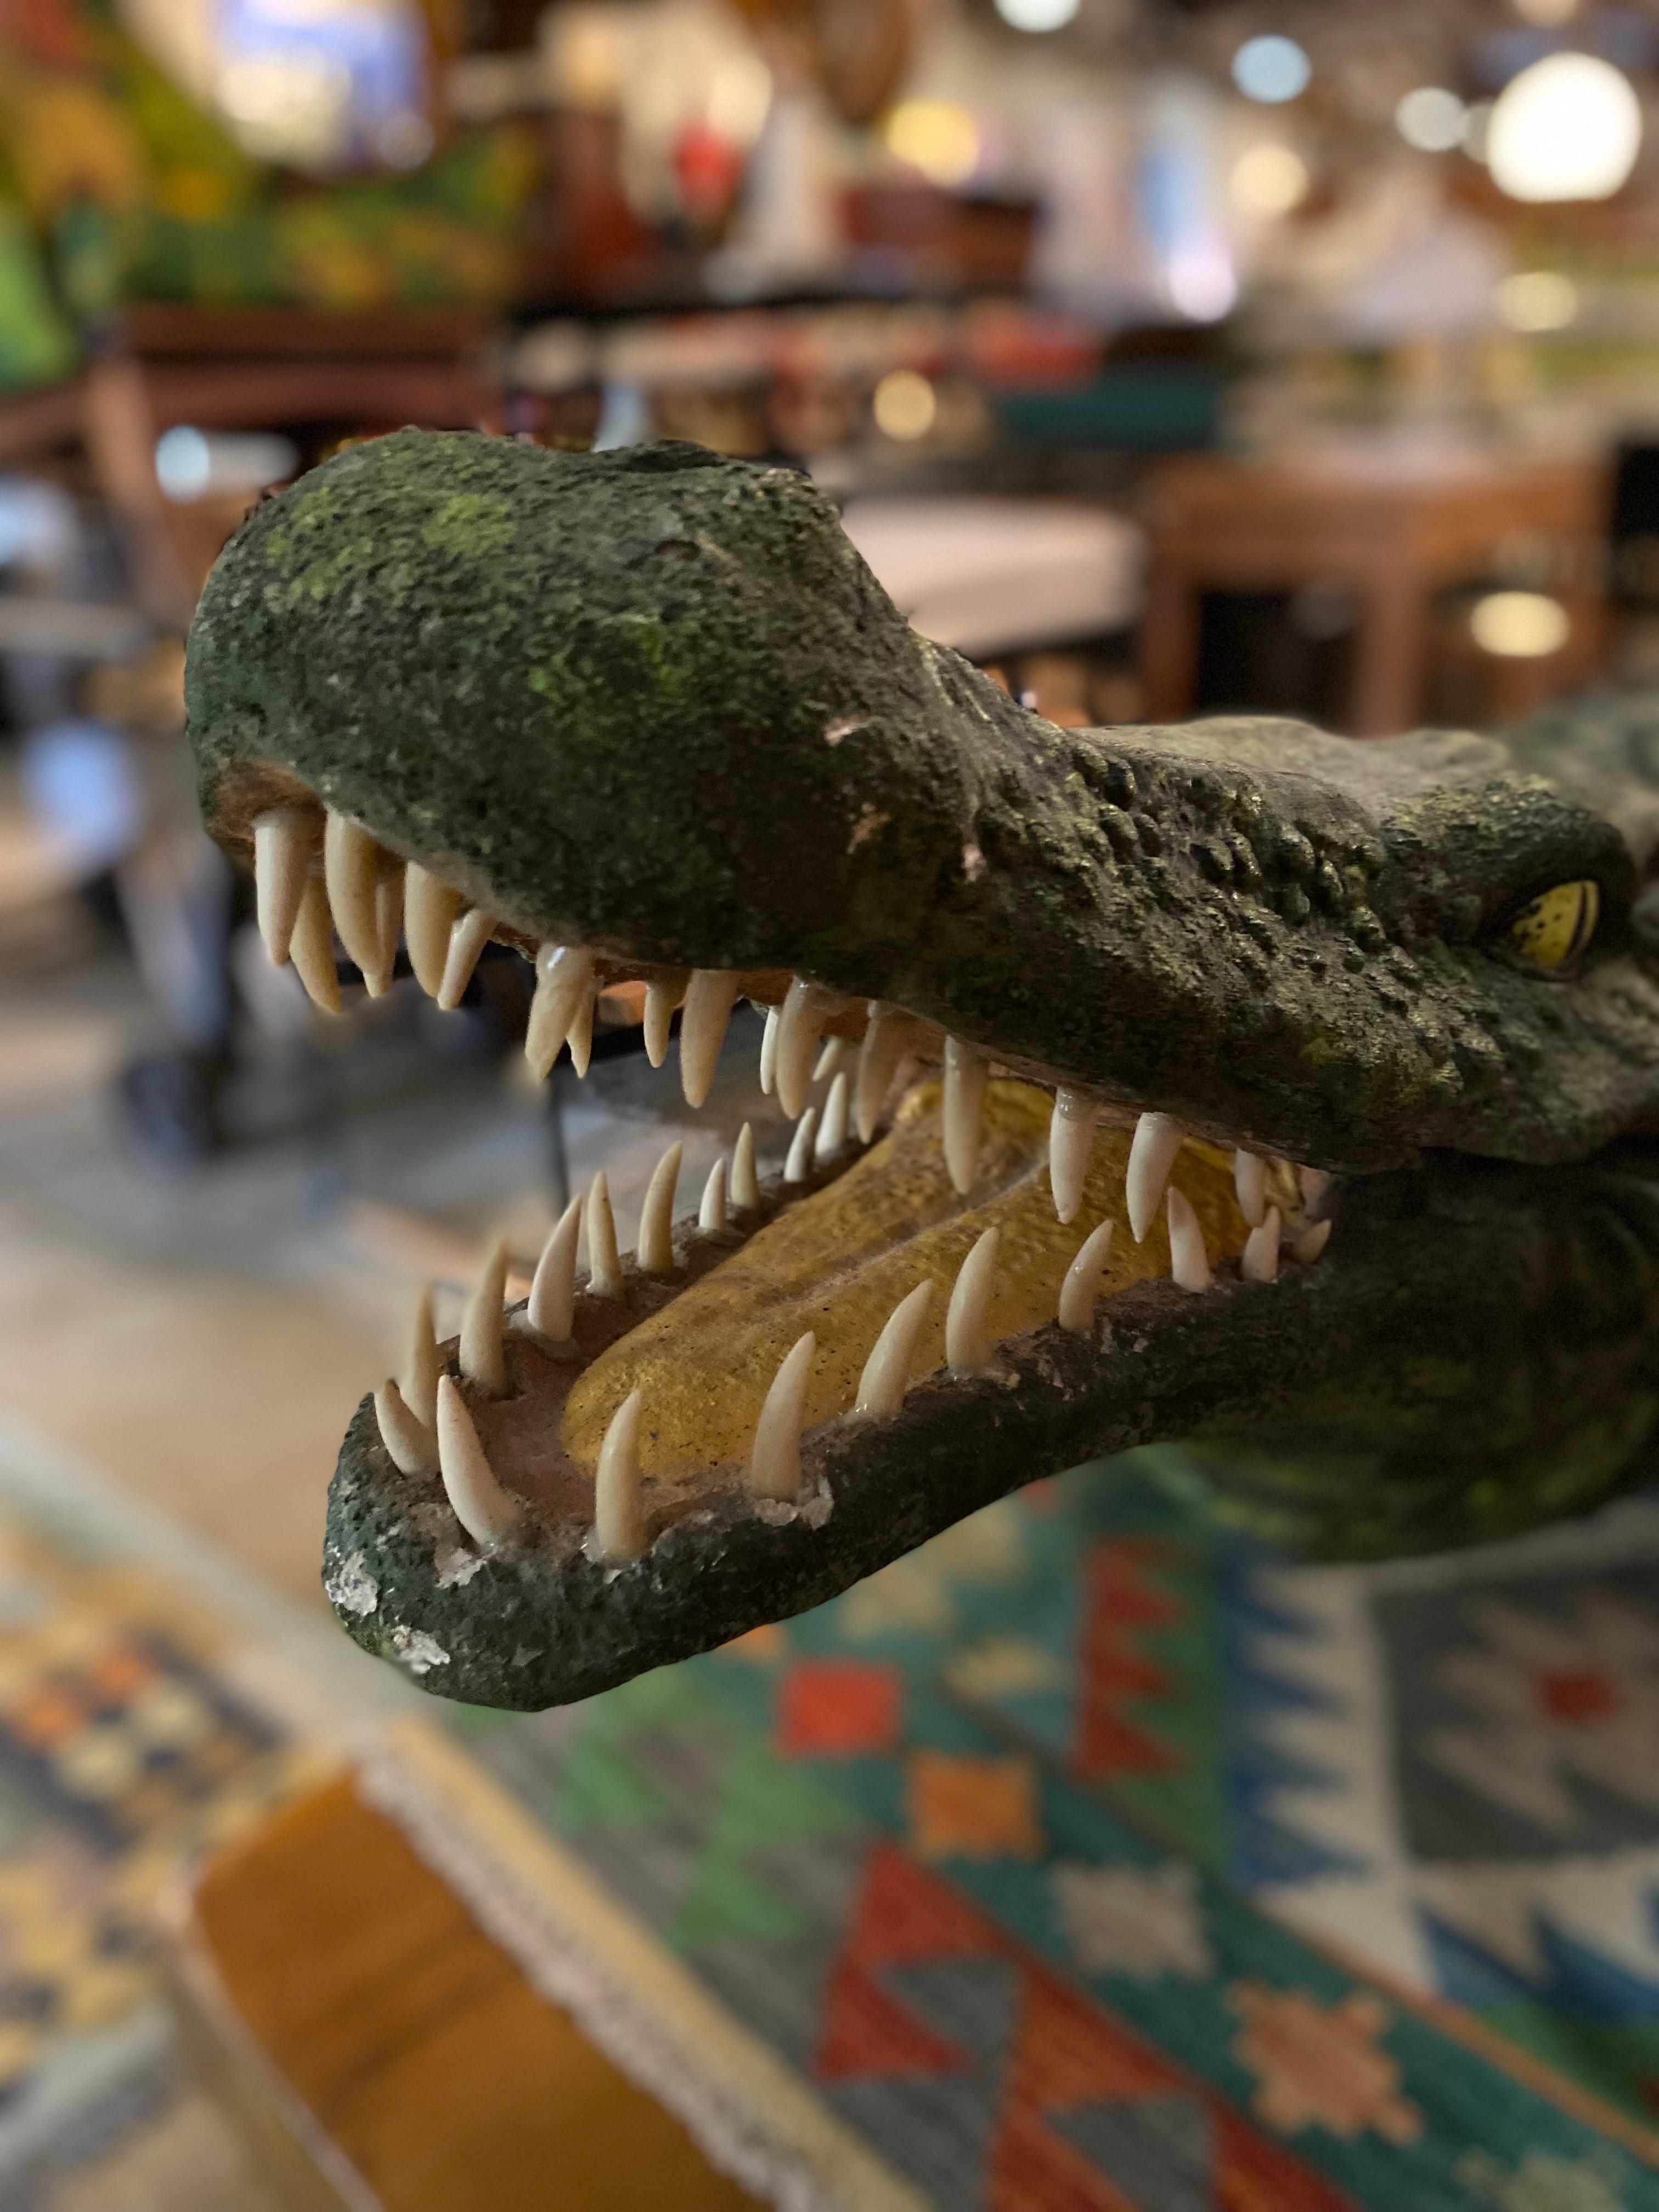 Grande statue de jardin / sculpture d'alligator en béton créée par Rene Romero, un artiste du faux bois de San Antonio, au Texas. Le sculpteur Rene Romero a appris l'art du faux bois auprès du célèbre maître artisan Carlos Cortes. Cet ornement de